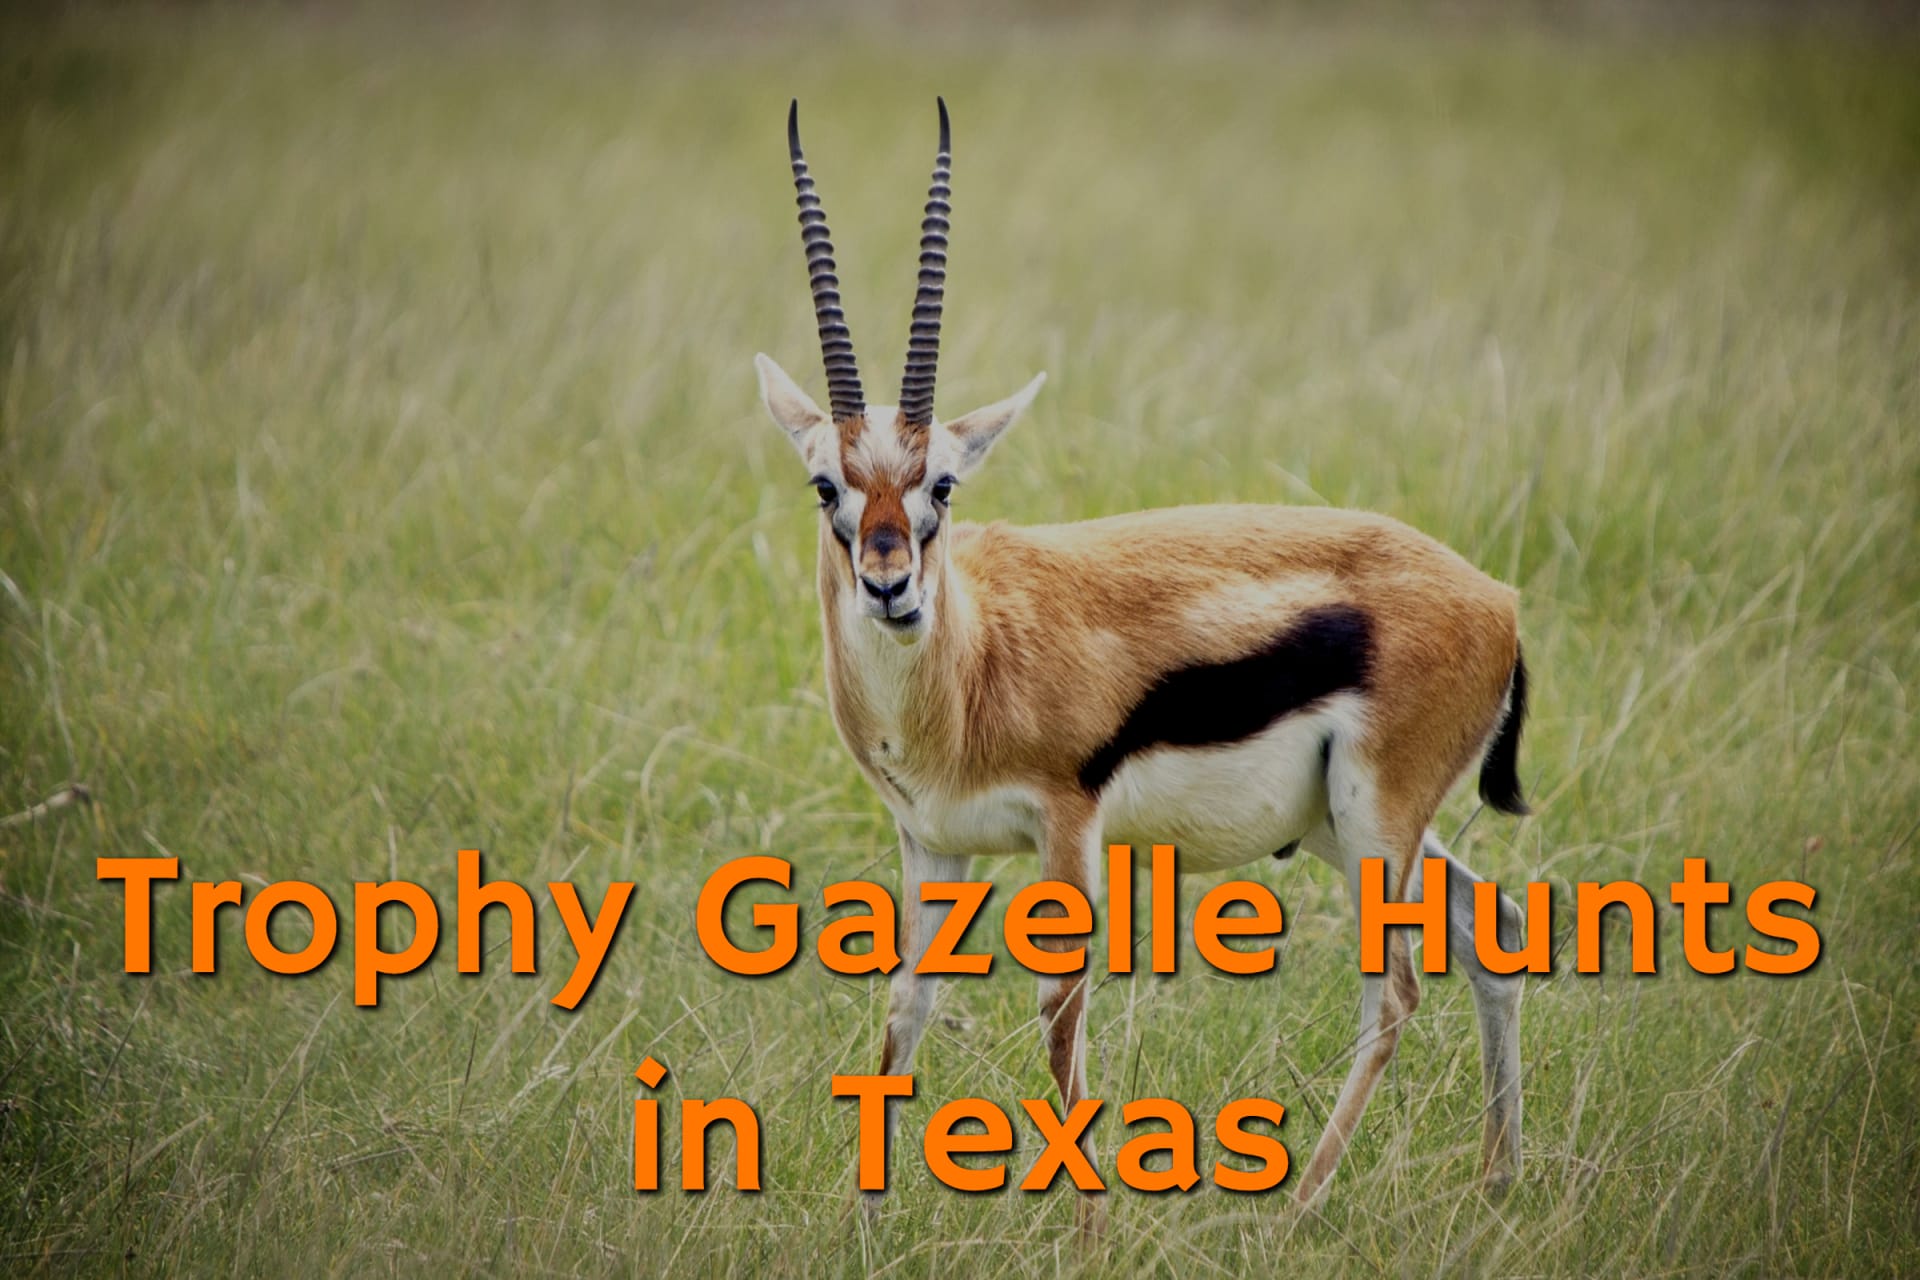 Majestic Gazelle at the Trophy Gazelle Hunts in Texas